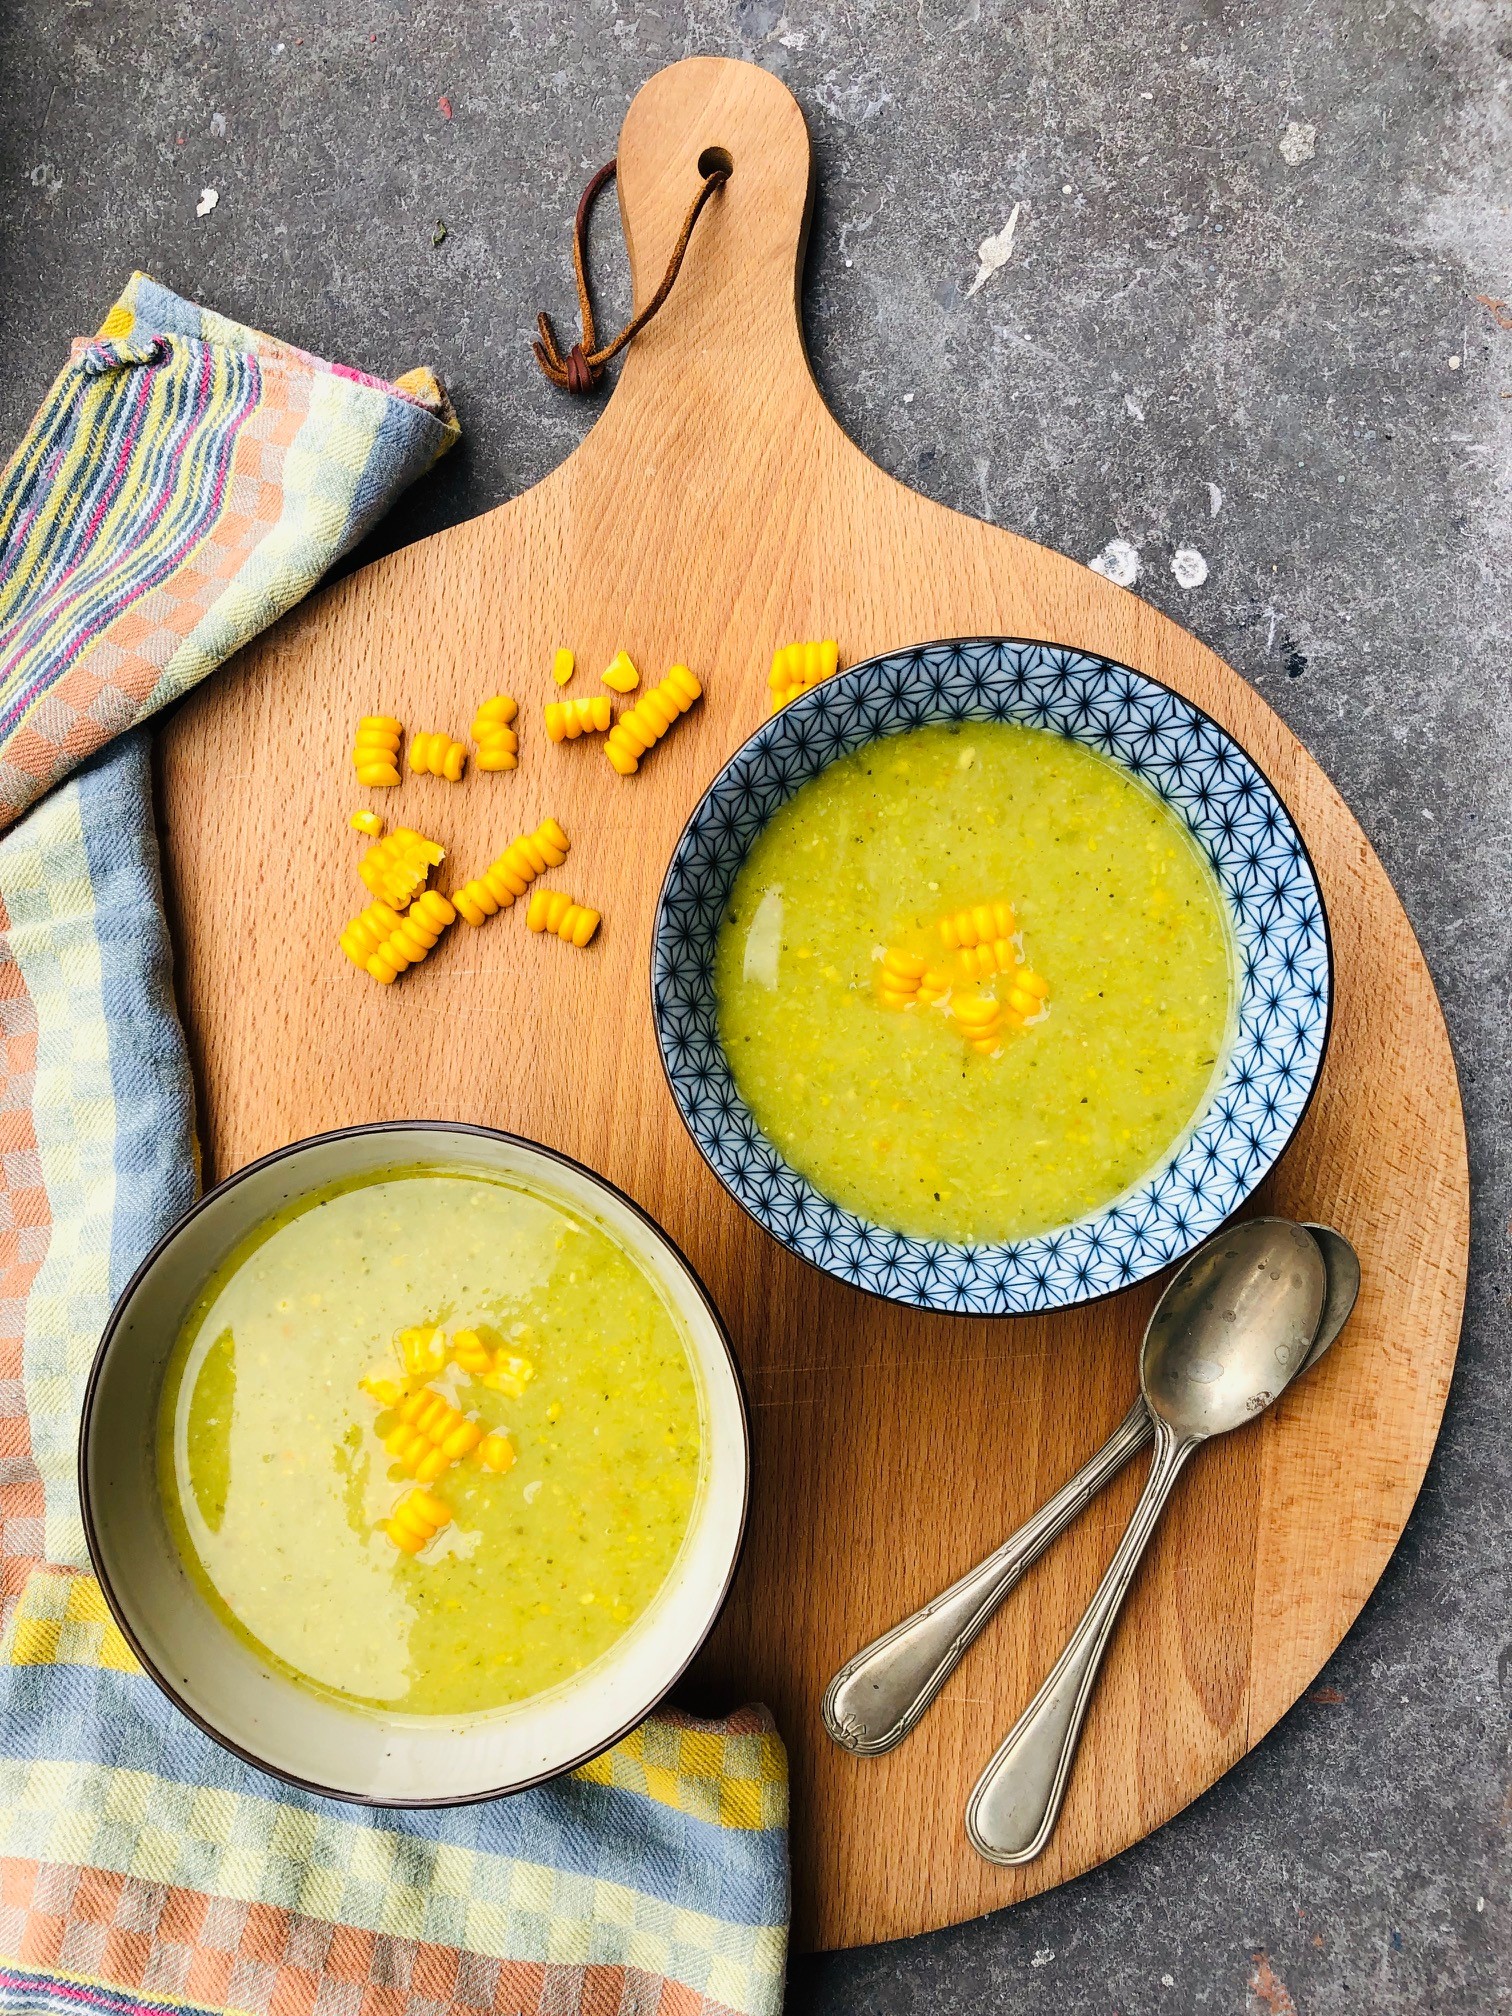 Patisson soep met mais en broccoli. Een heerlijke vegetarisch en vegan recept boordevol groenten. lekker als lunch, voorgerecht of als lichte maaltijd soep.